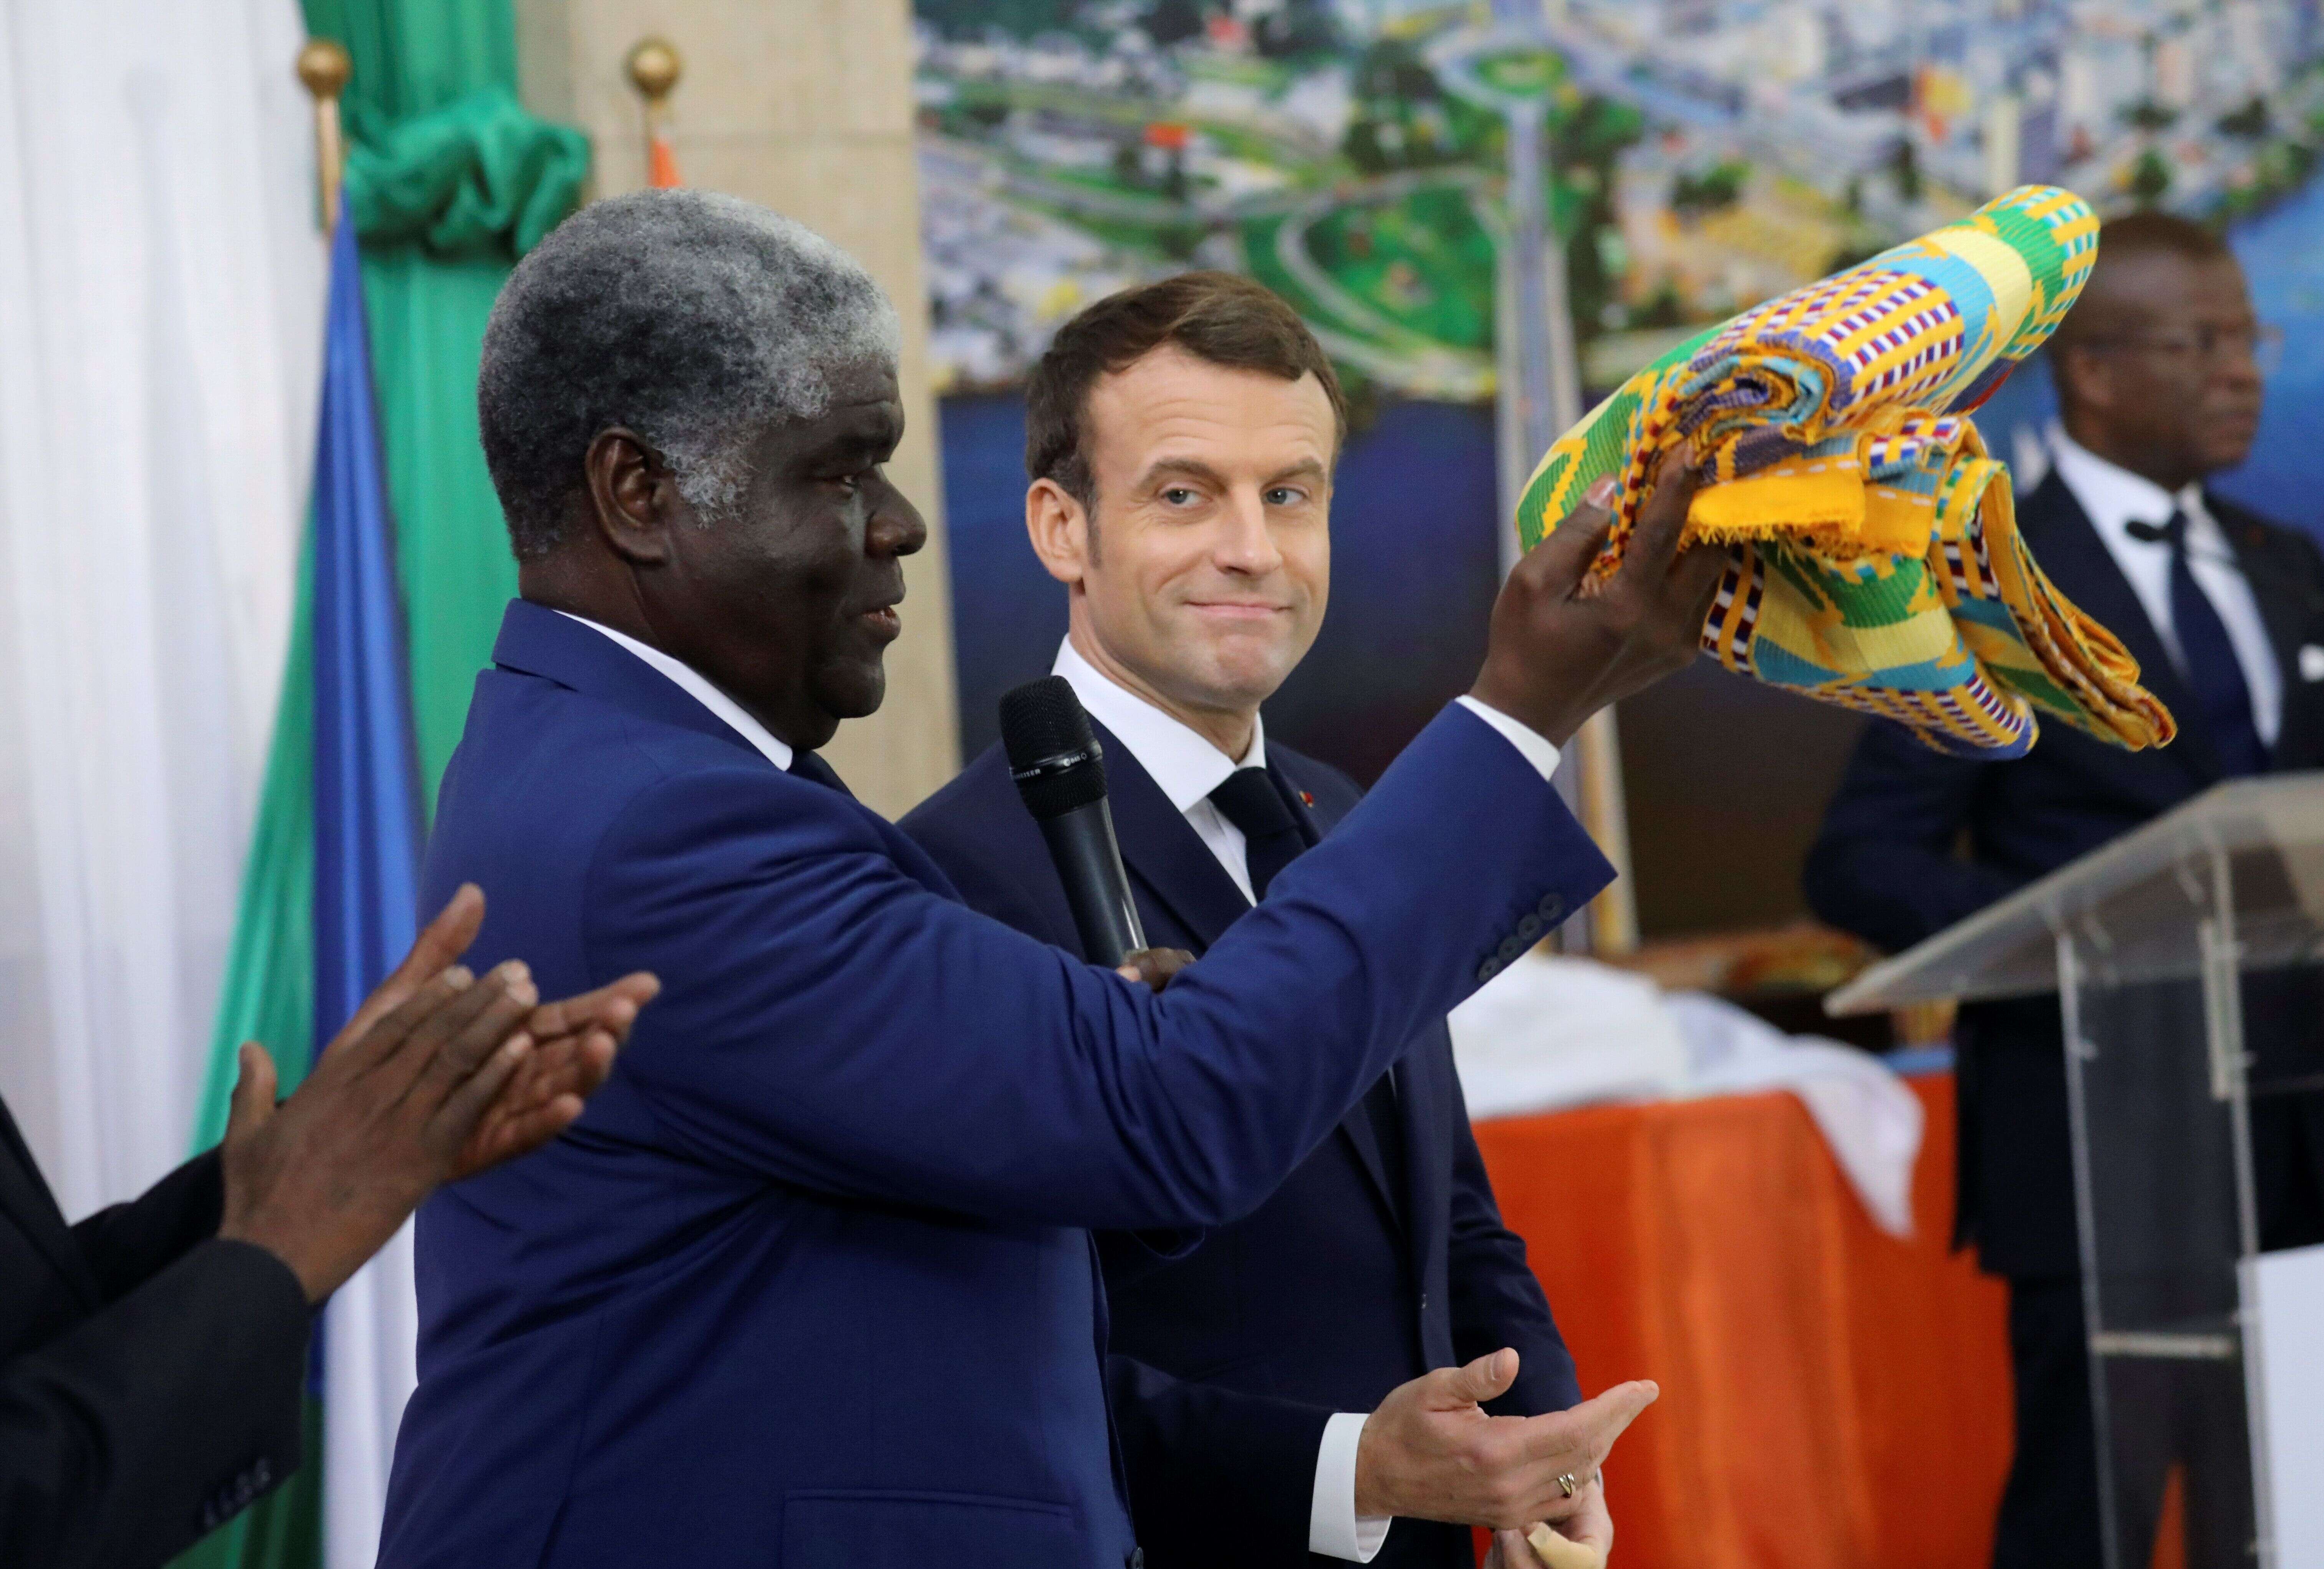 Le jour de ses 42 ans, Emmanuel Macron a été fait chef traditionnel en Côte d'Ivoire. Il peut désormais être appelé N’djekouale.